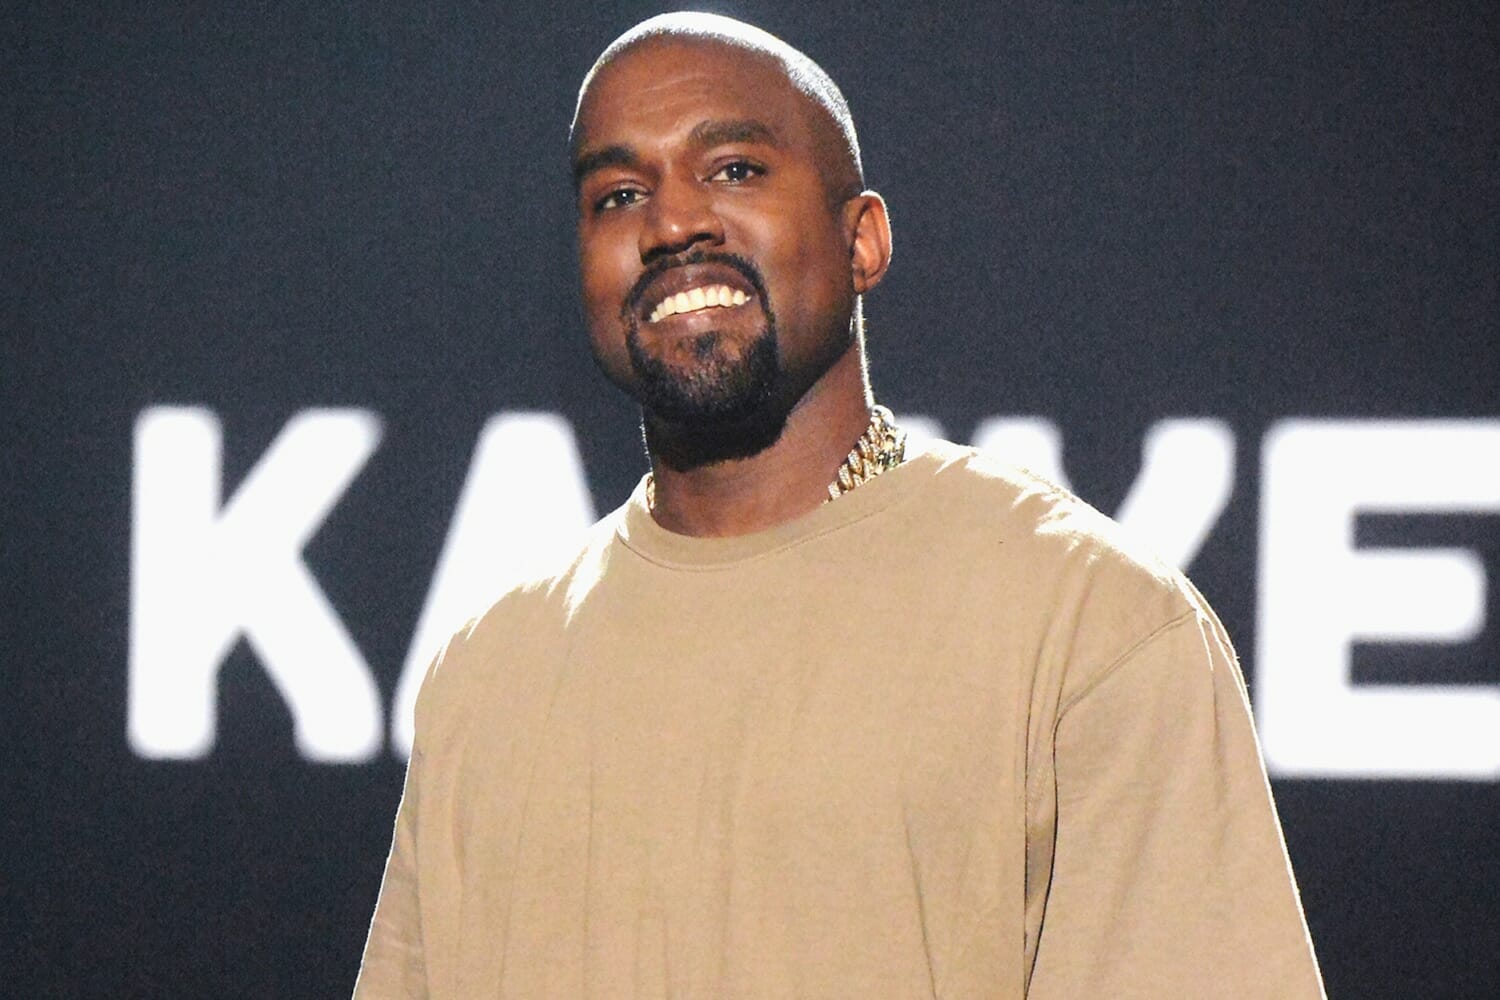 Kanye West handsome smile